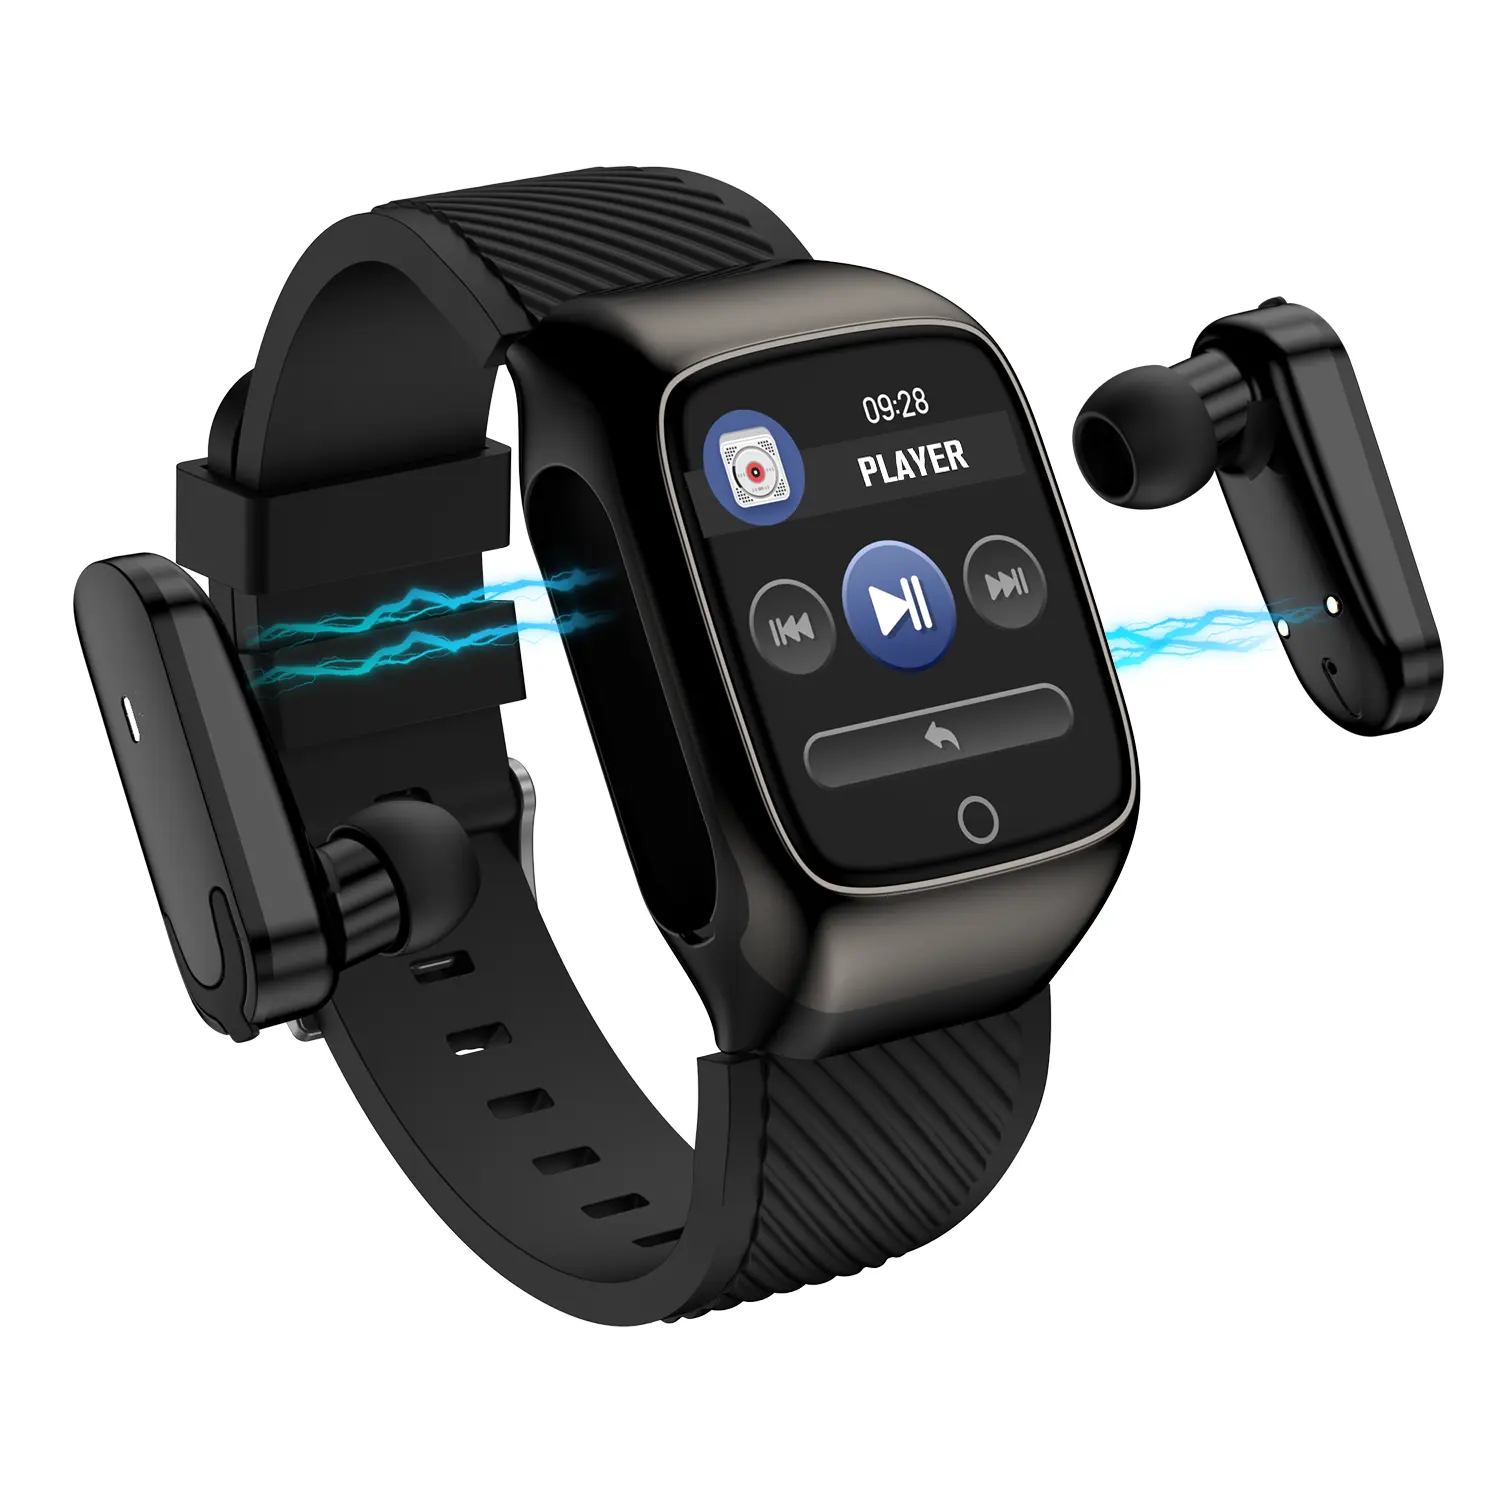 Amazon sıcak satış özel Logo S300 smartwatch mavi kulaklık 2 in 1 saat ve kablosuz kulaklık ücretsiz kargo